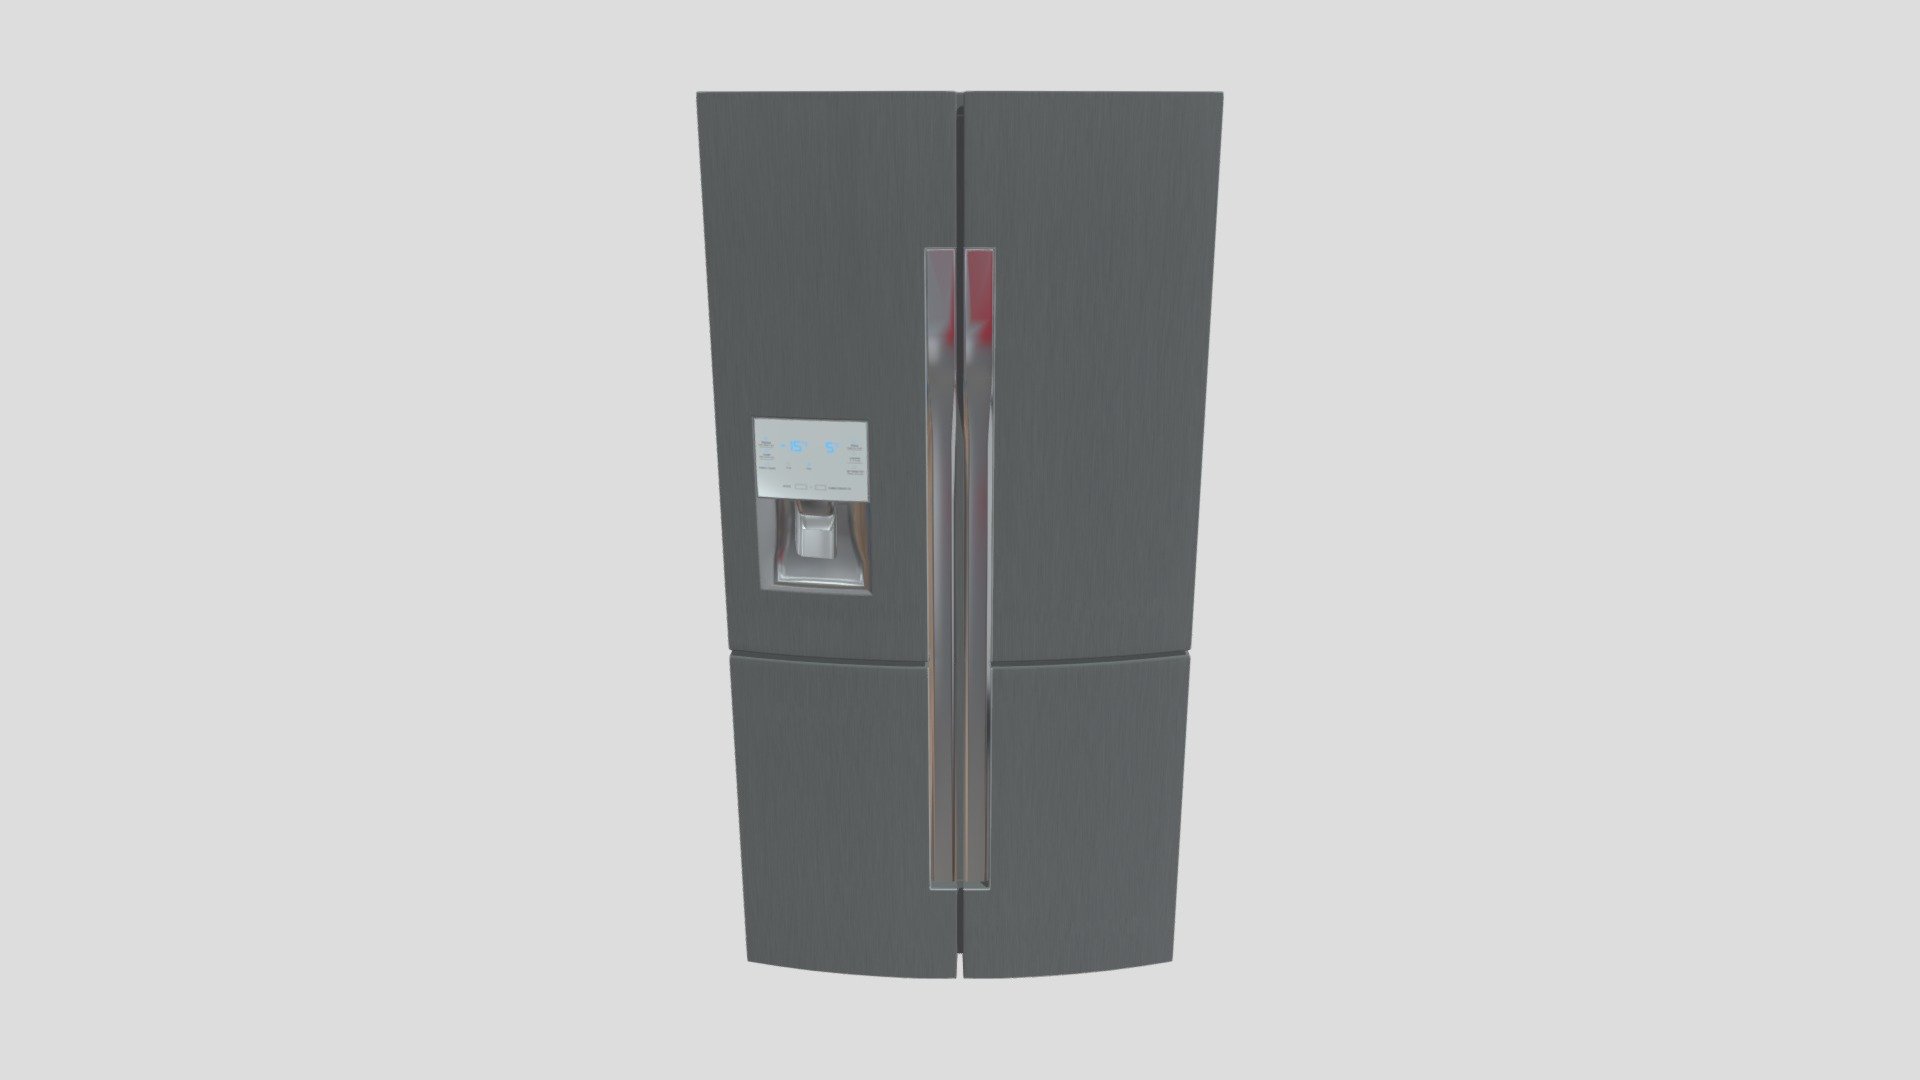 Kitchen Refrigerator for Architectural Design - Kitchen Refrigerator - 3D model by ElpidioF 3d model